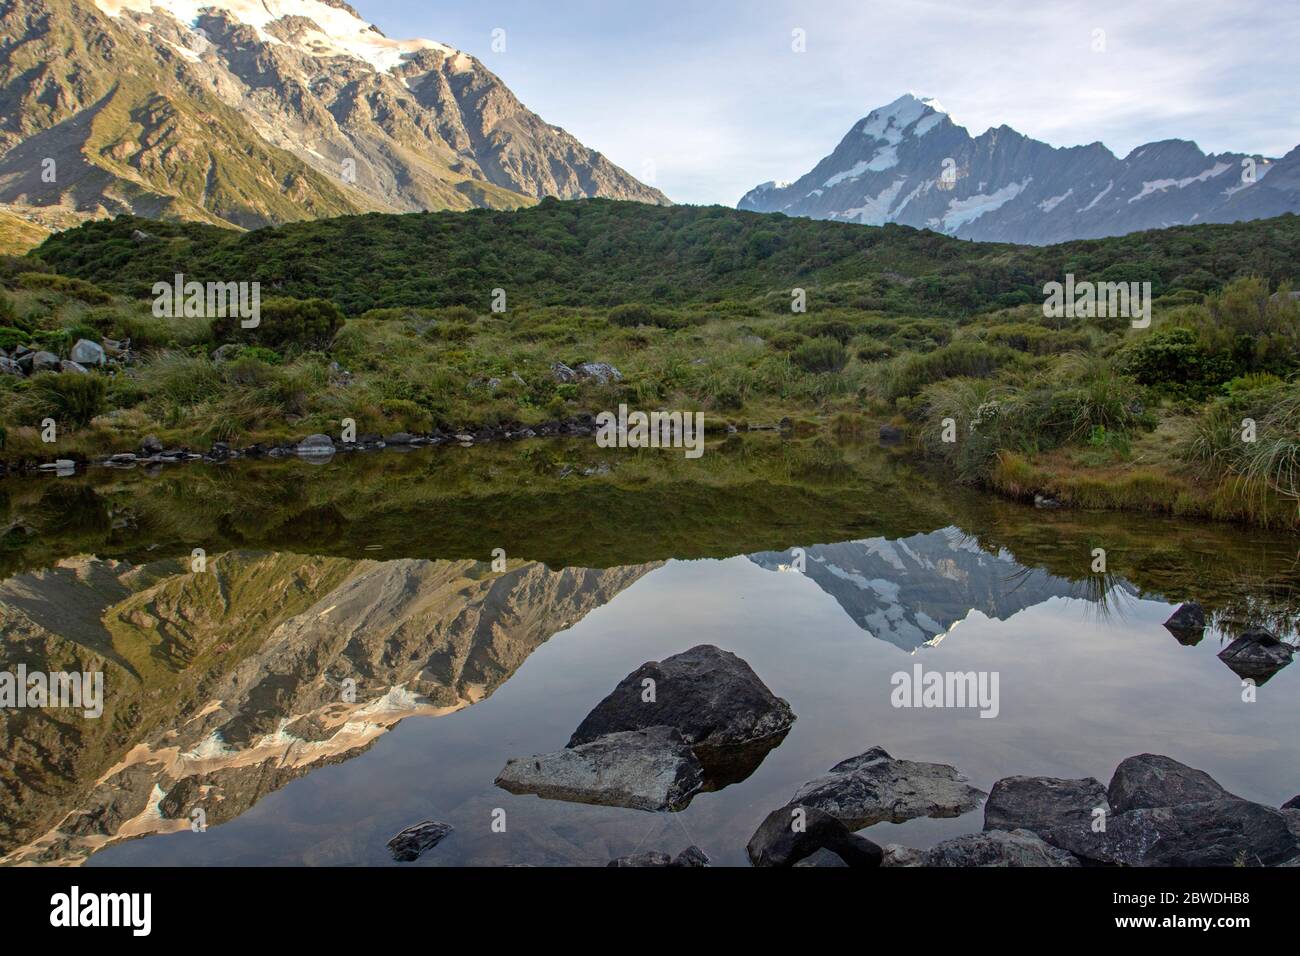 Aoraki/Mt Cook reflected in a tarn Stock Photo